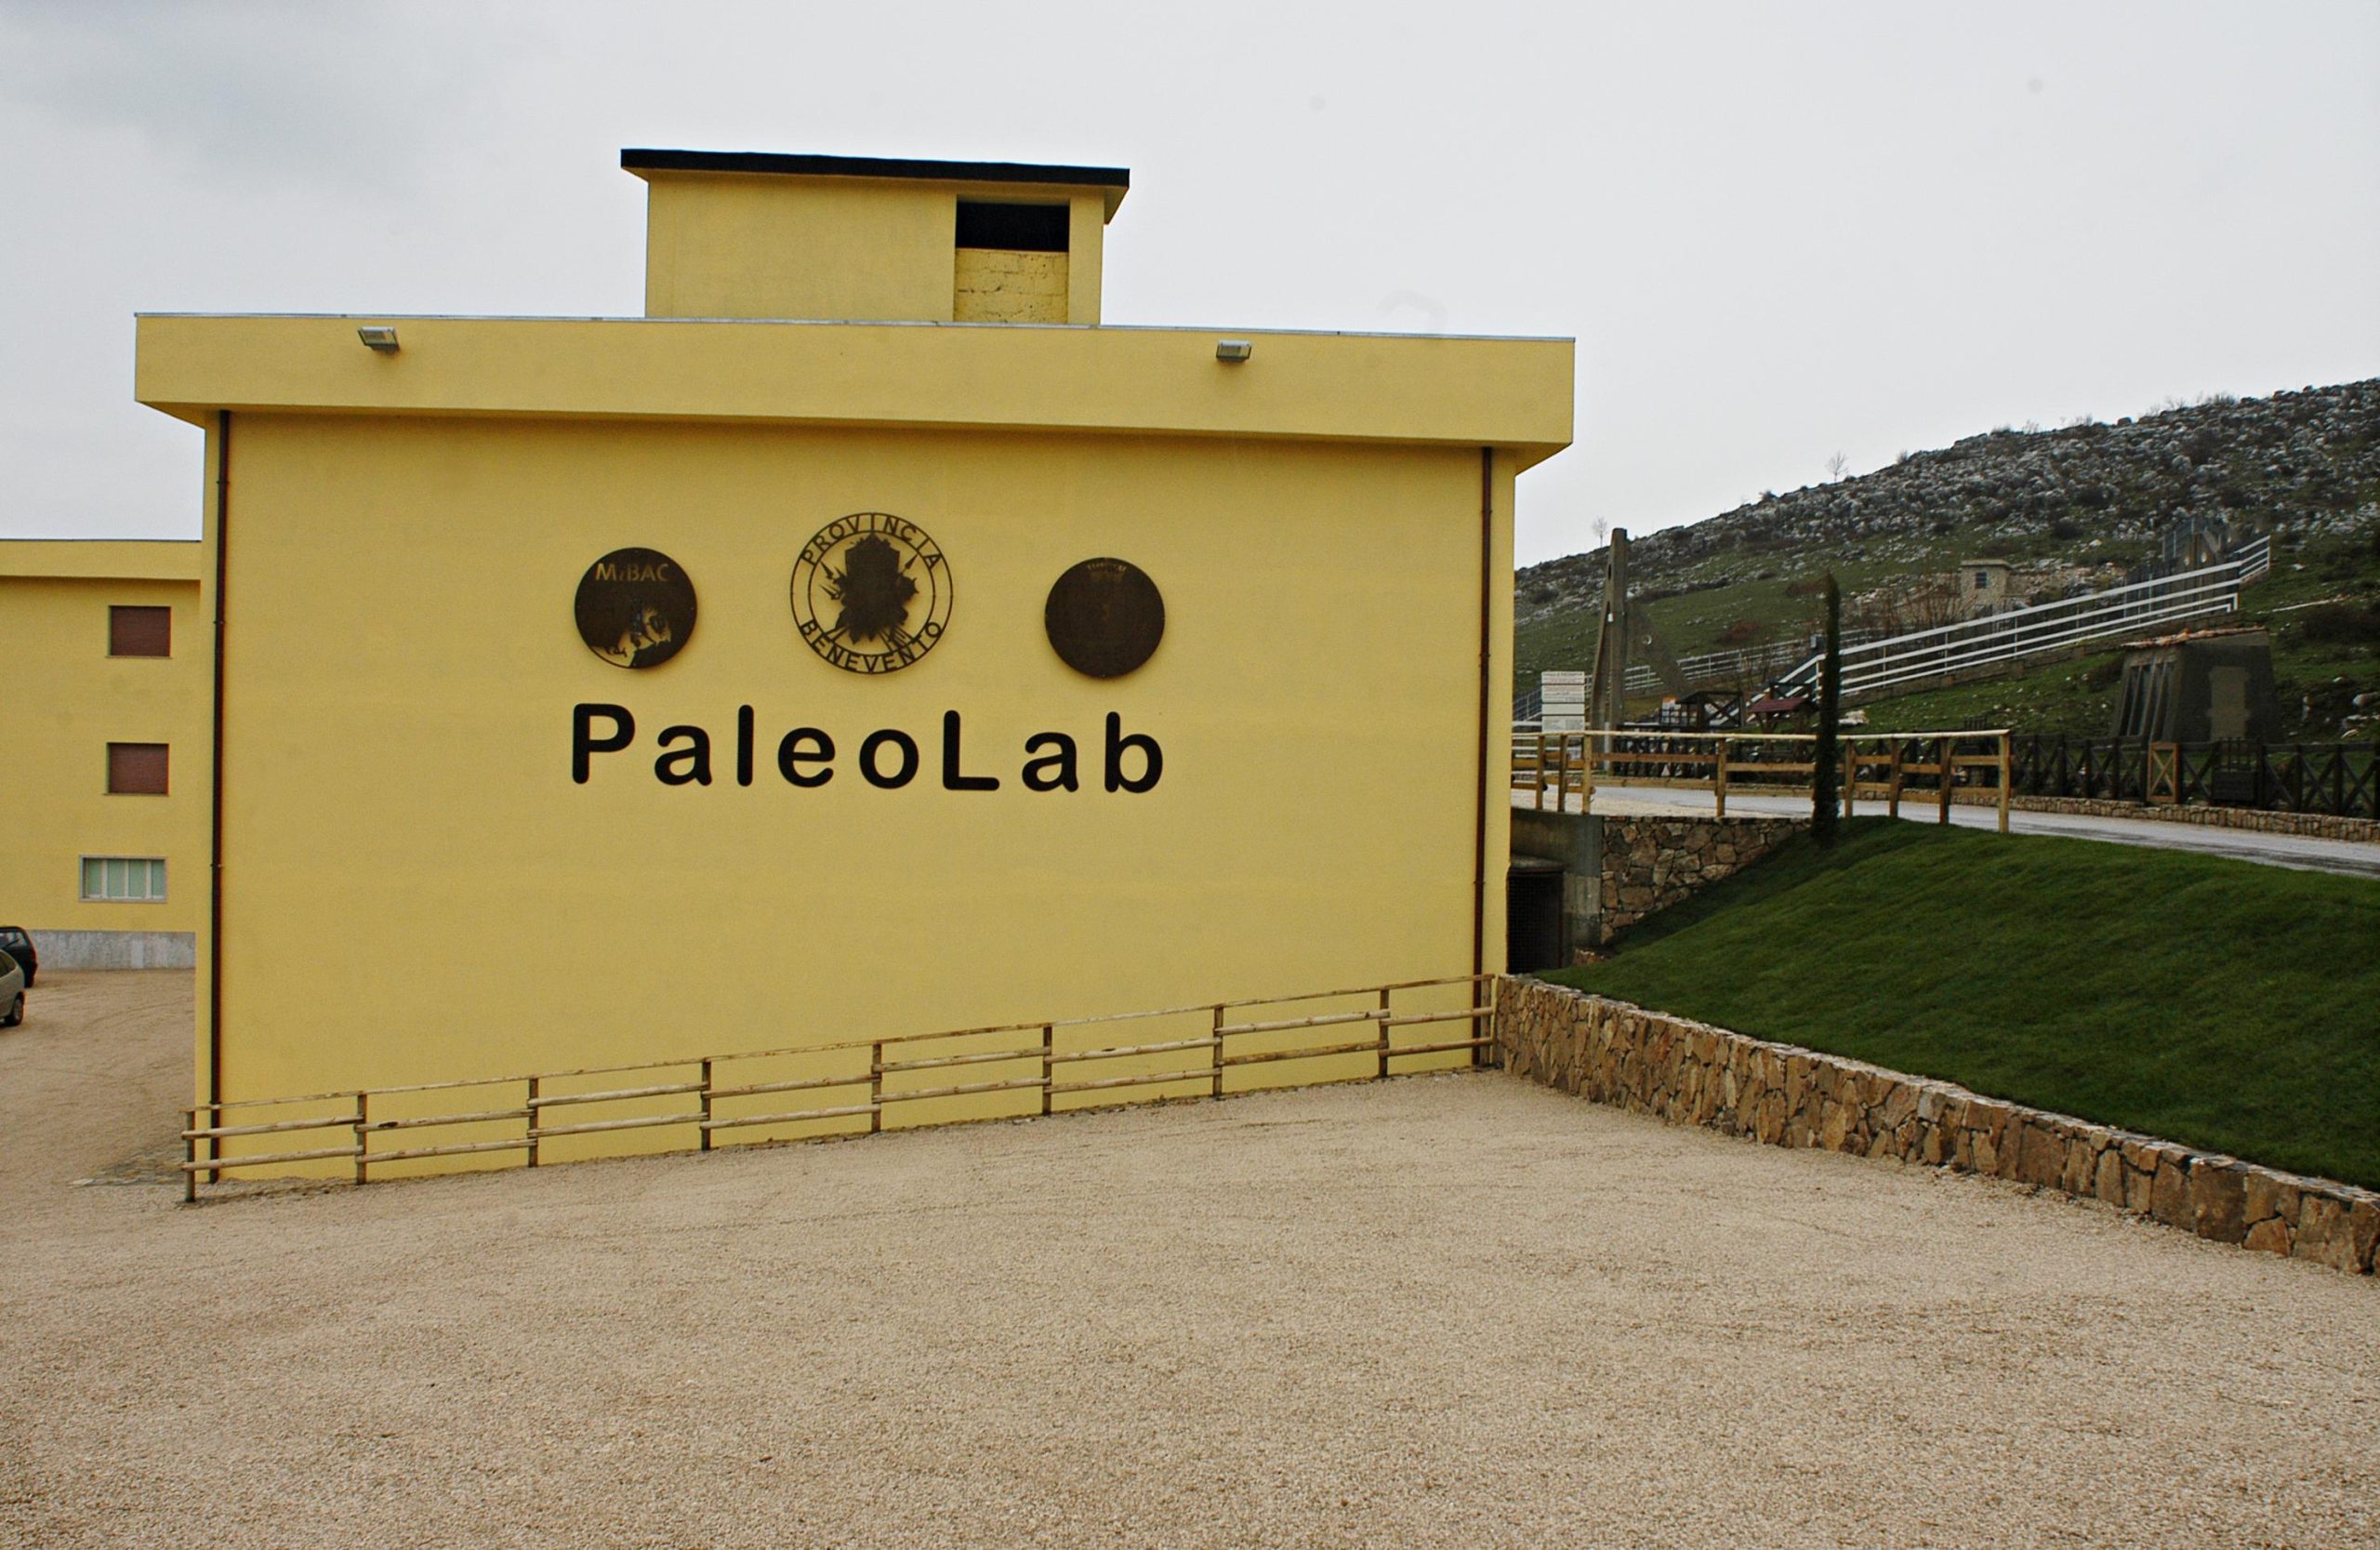 PaleoLab e Parco Geopaleontologico di Pietraroja, la Provincia approva progetto di fattibilità tecnico-economica per la riqualificazione